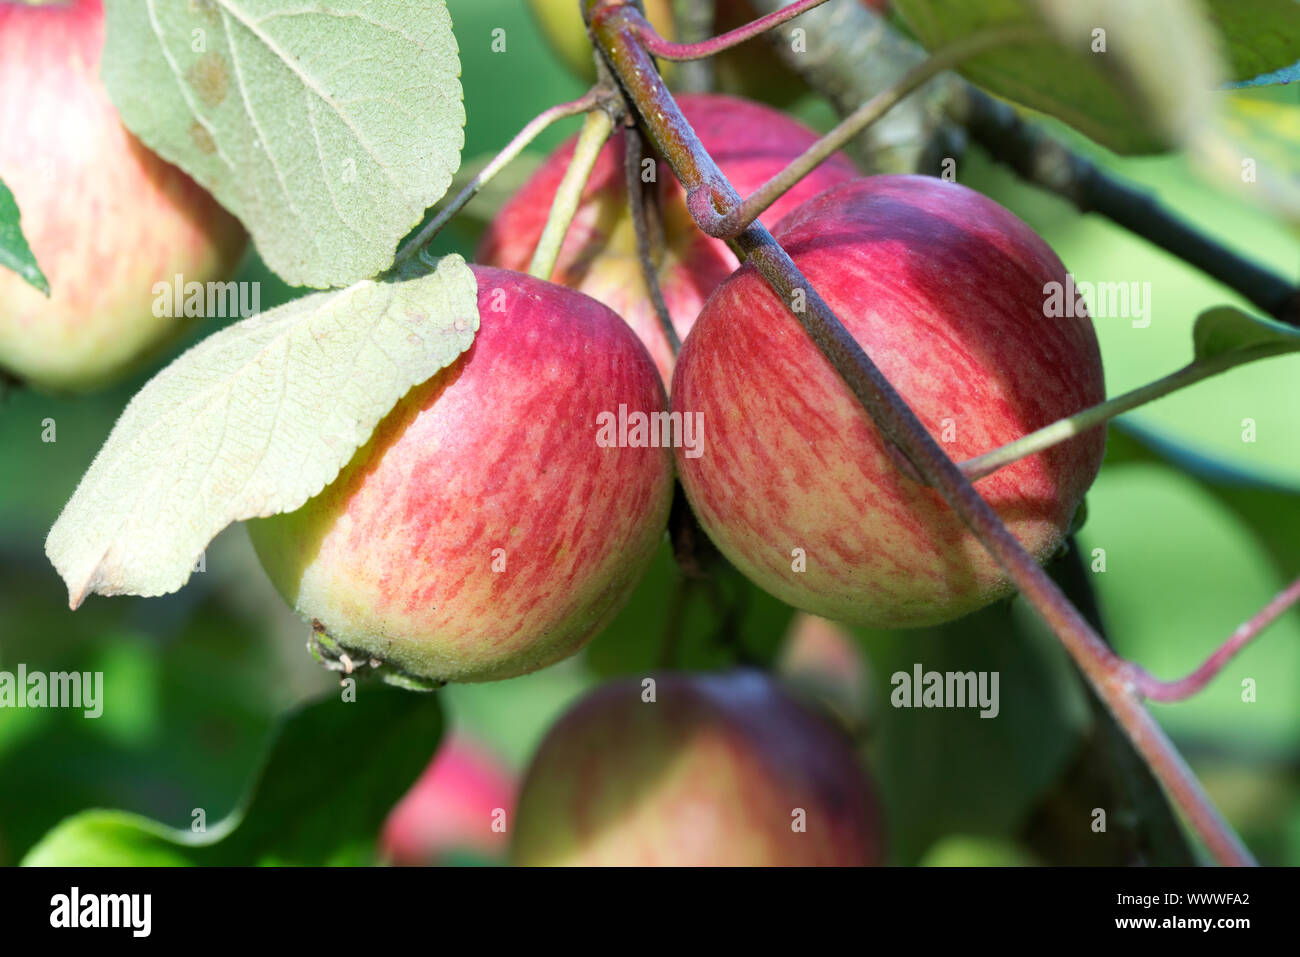 Schöner von Herrnhut, apple, old variety, Germany, Europe; Stock Photo